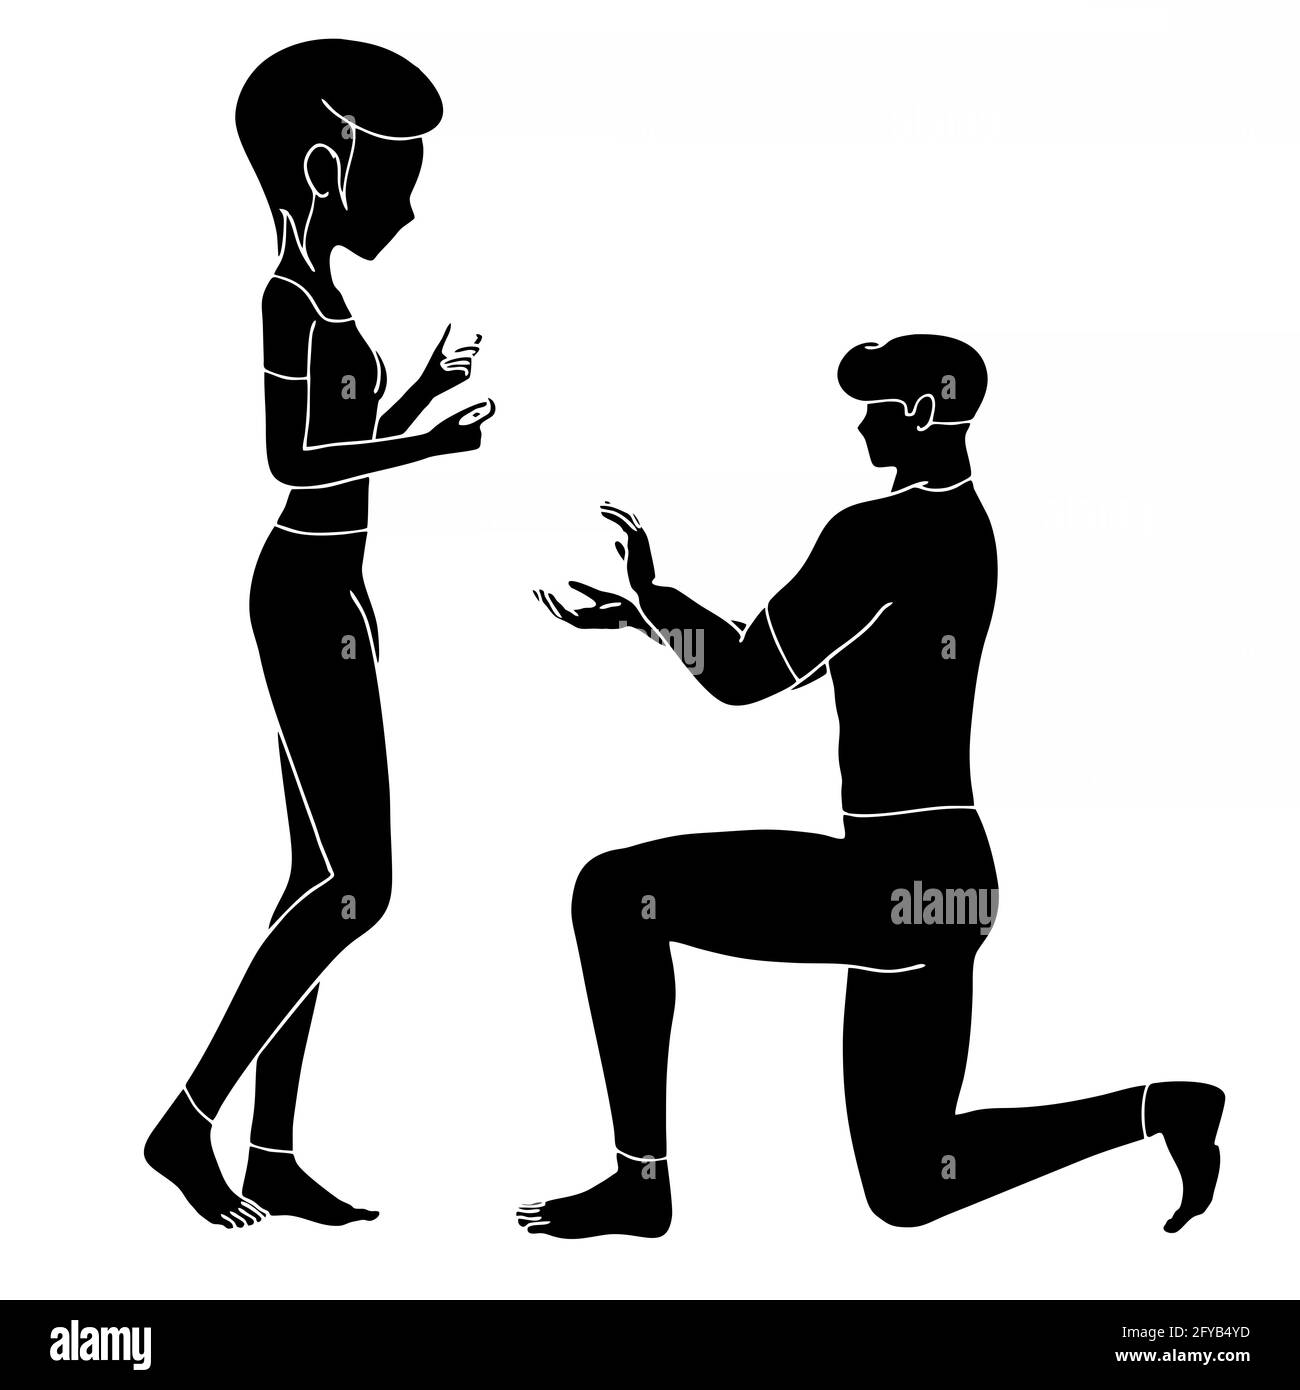 Dessin animé noir illustration d'un mâle proposant à un personnage femelle isolé sur fond blanc Banque D'Images